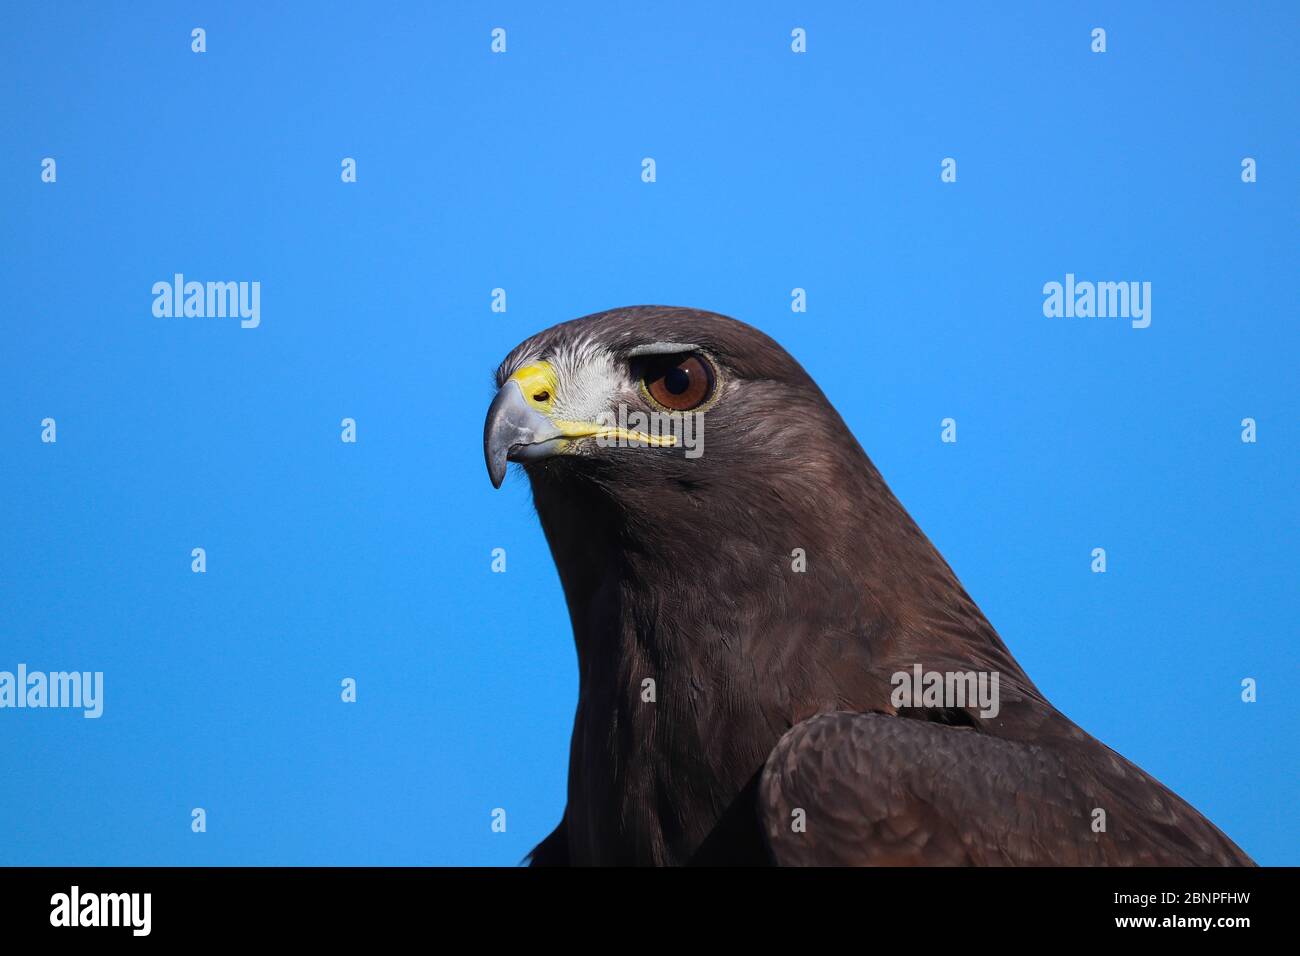 Colpo di testa di un falco di Harris (Parabuteo unicinctus), un buteo di medie dimensioni popolare per la falconeria. Uccello marrone scuro contro cielo blu, spazio copia. Foto Stock